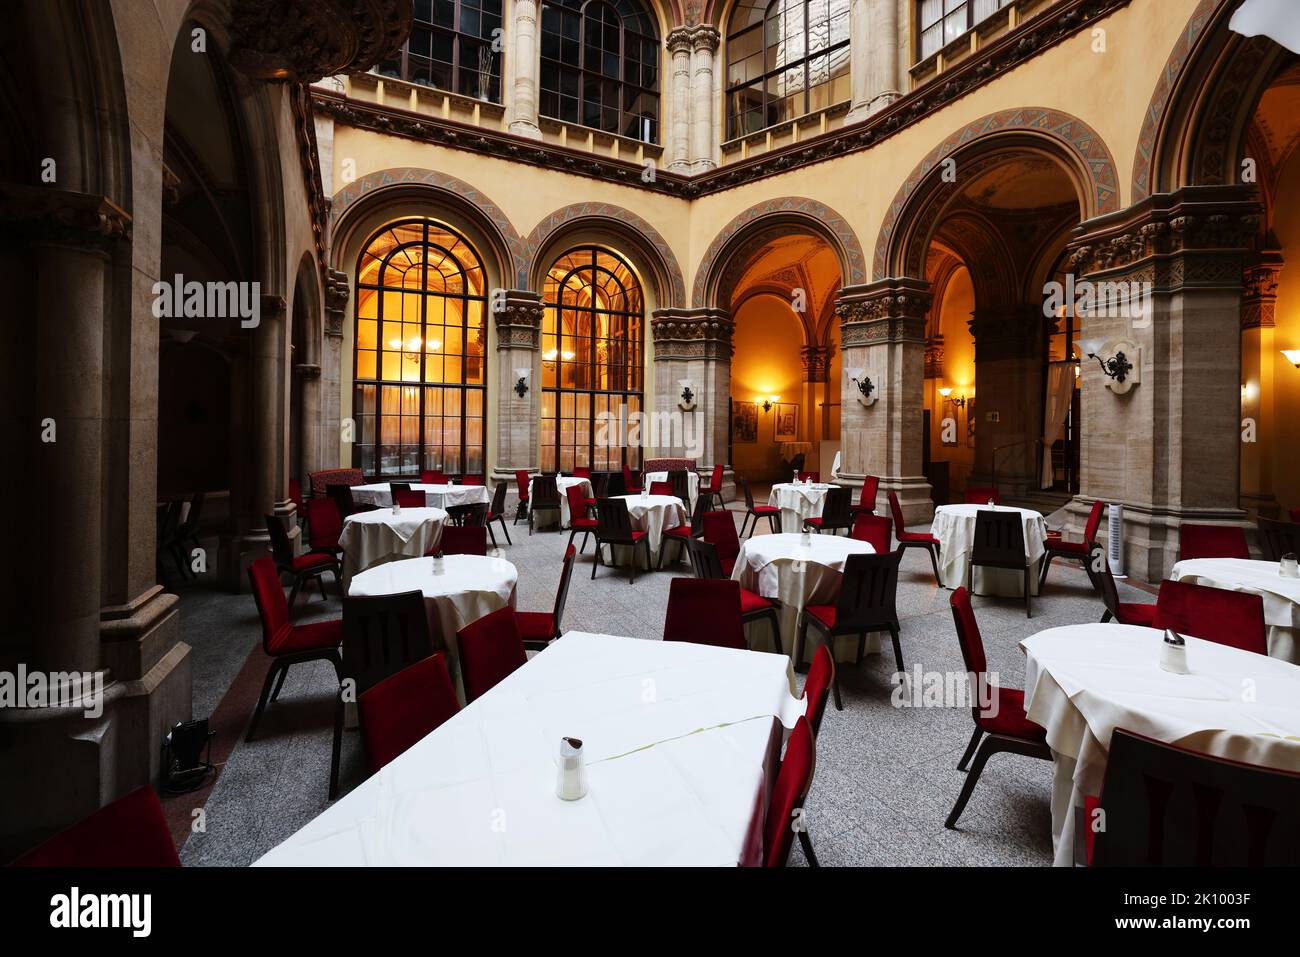 Kaffee, Cafe Central, Wien, im historischen Ambiente eines Wiener Cafehauss einen Viaker oder Schwarzen geniessen und in Gedanken schwelgen Banque D'Images